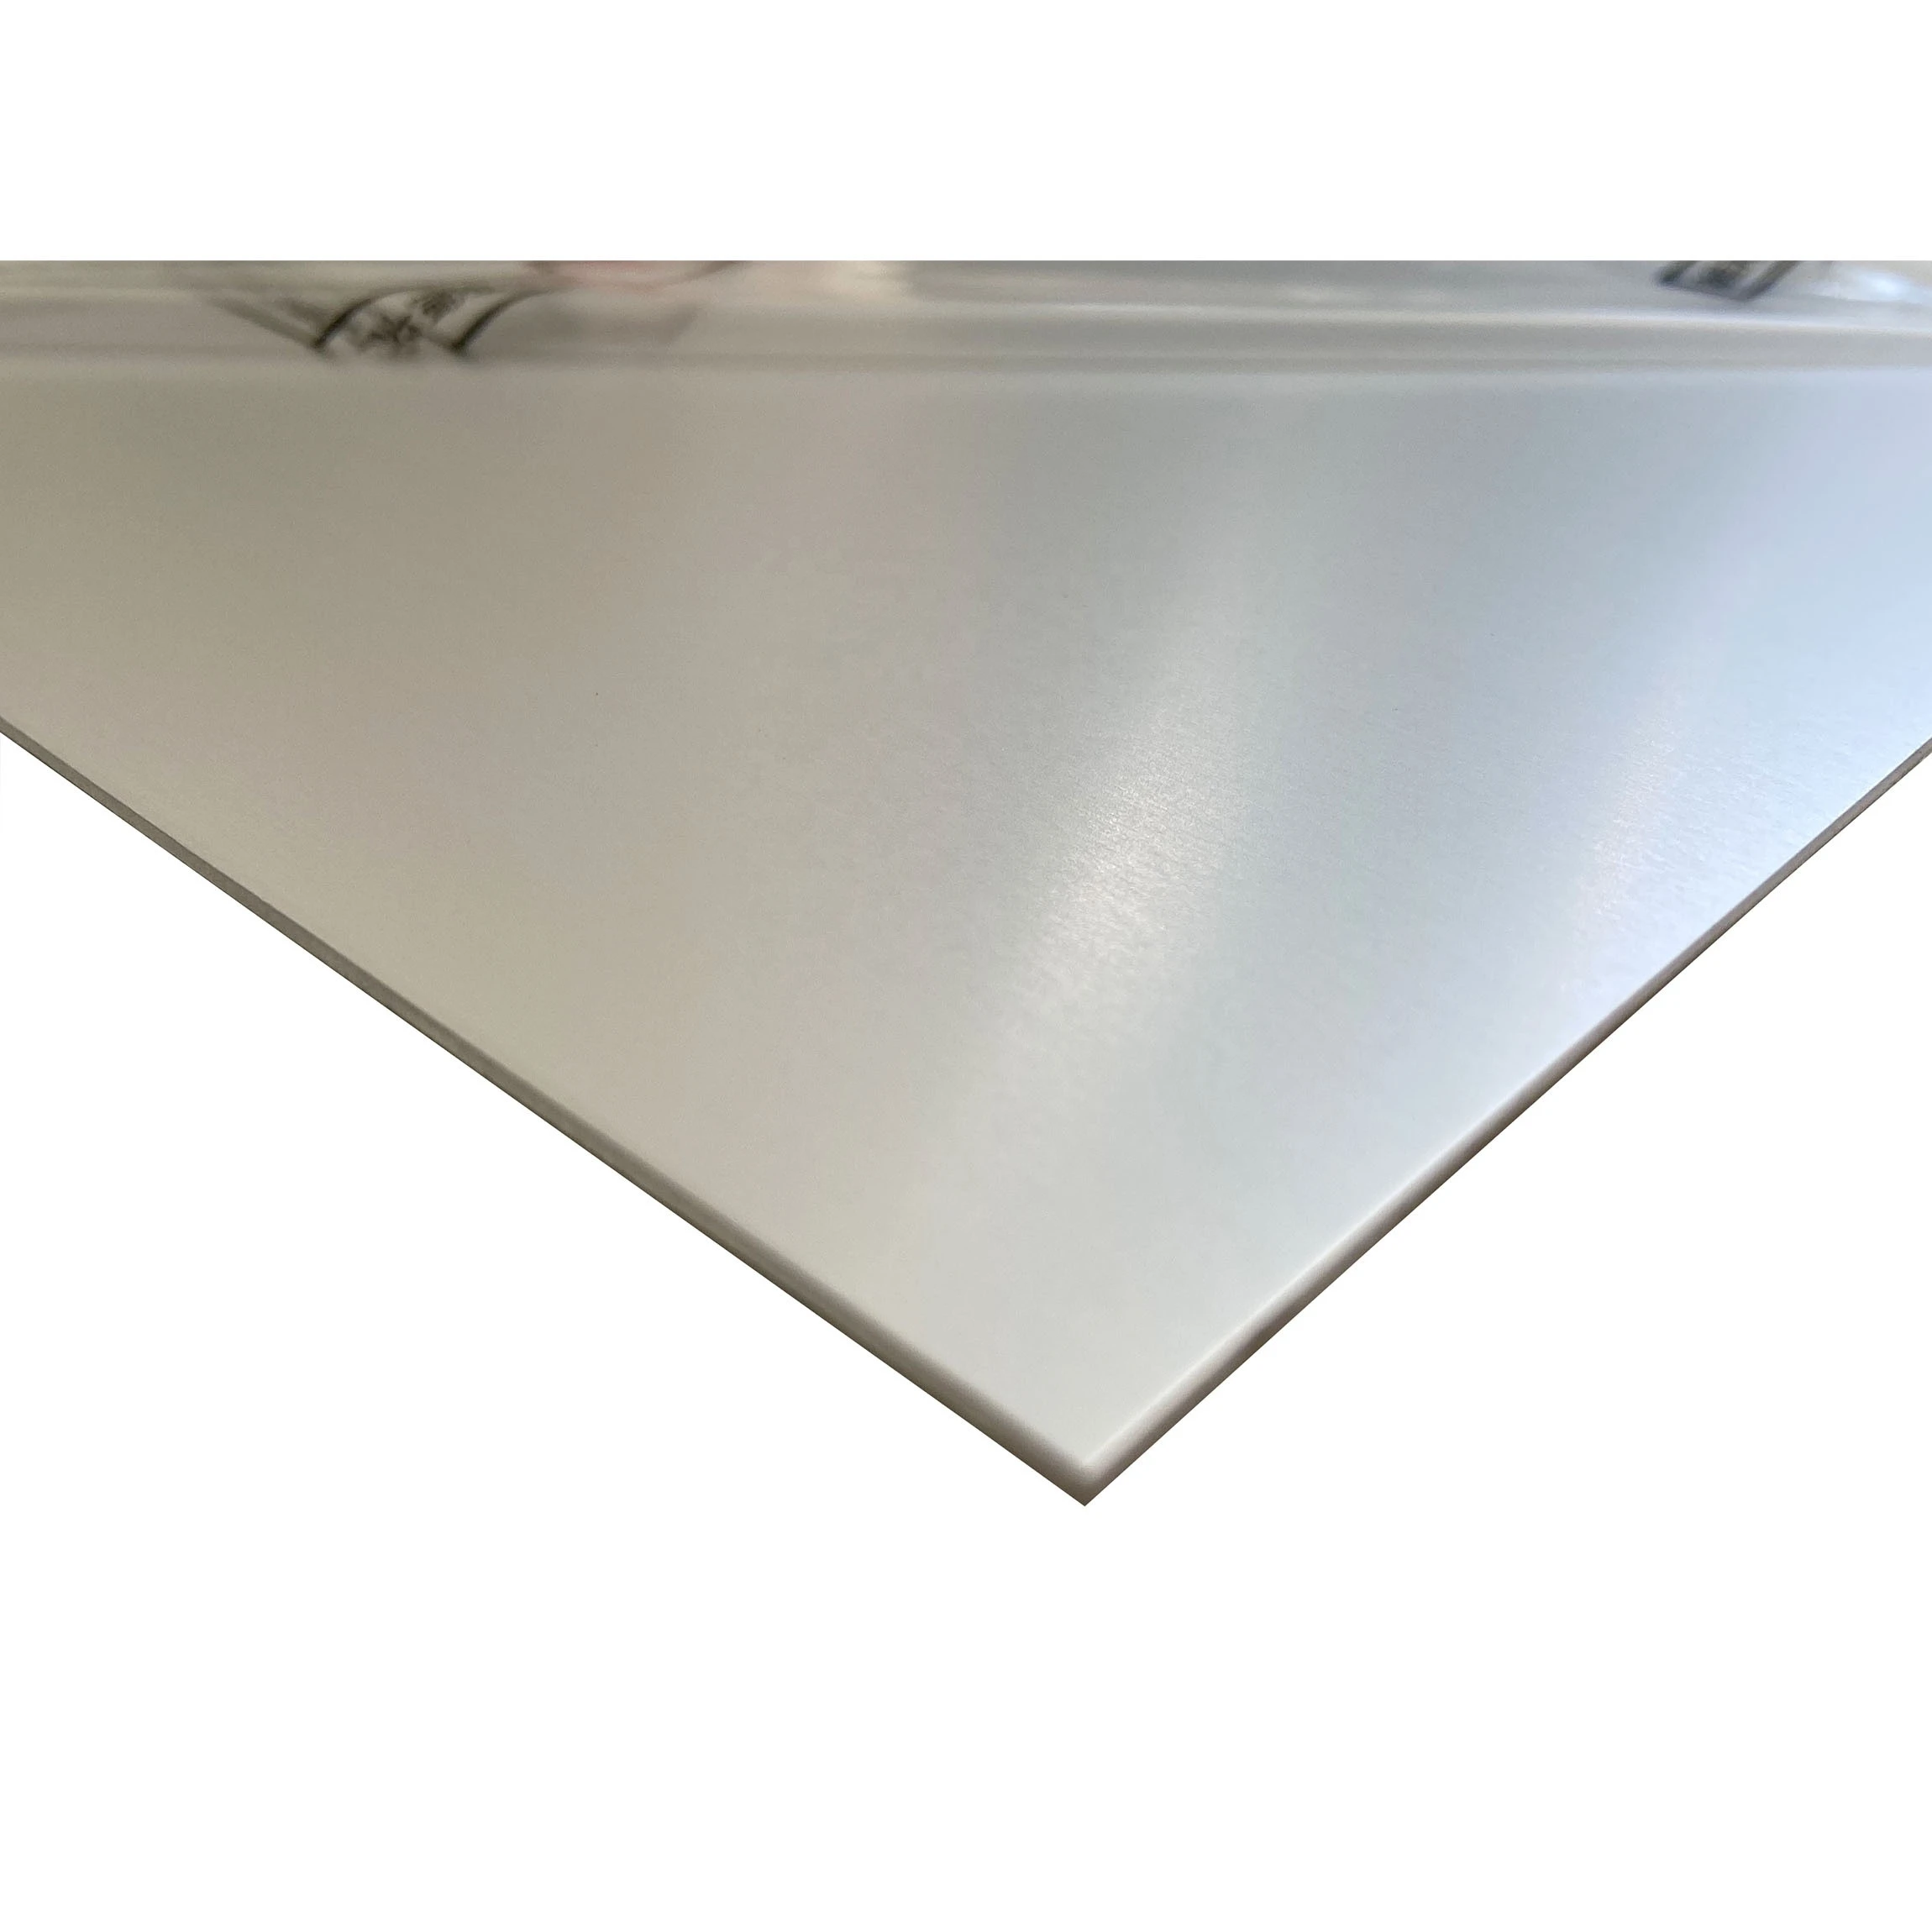 Satin anodised aluminium sheets are available from stock 15-year warranty aluminum cladding panels anodized aluminium sheet